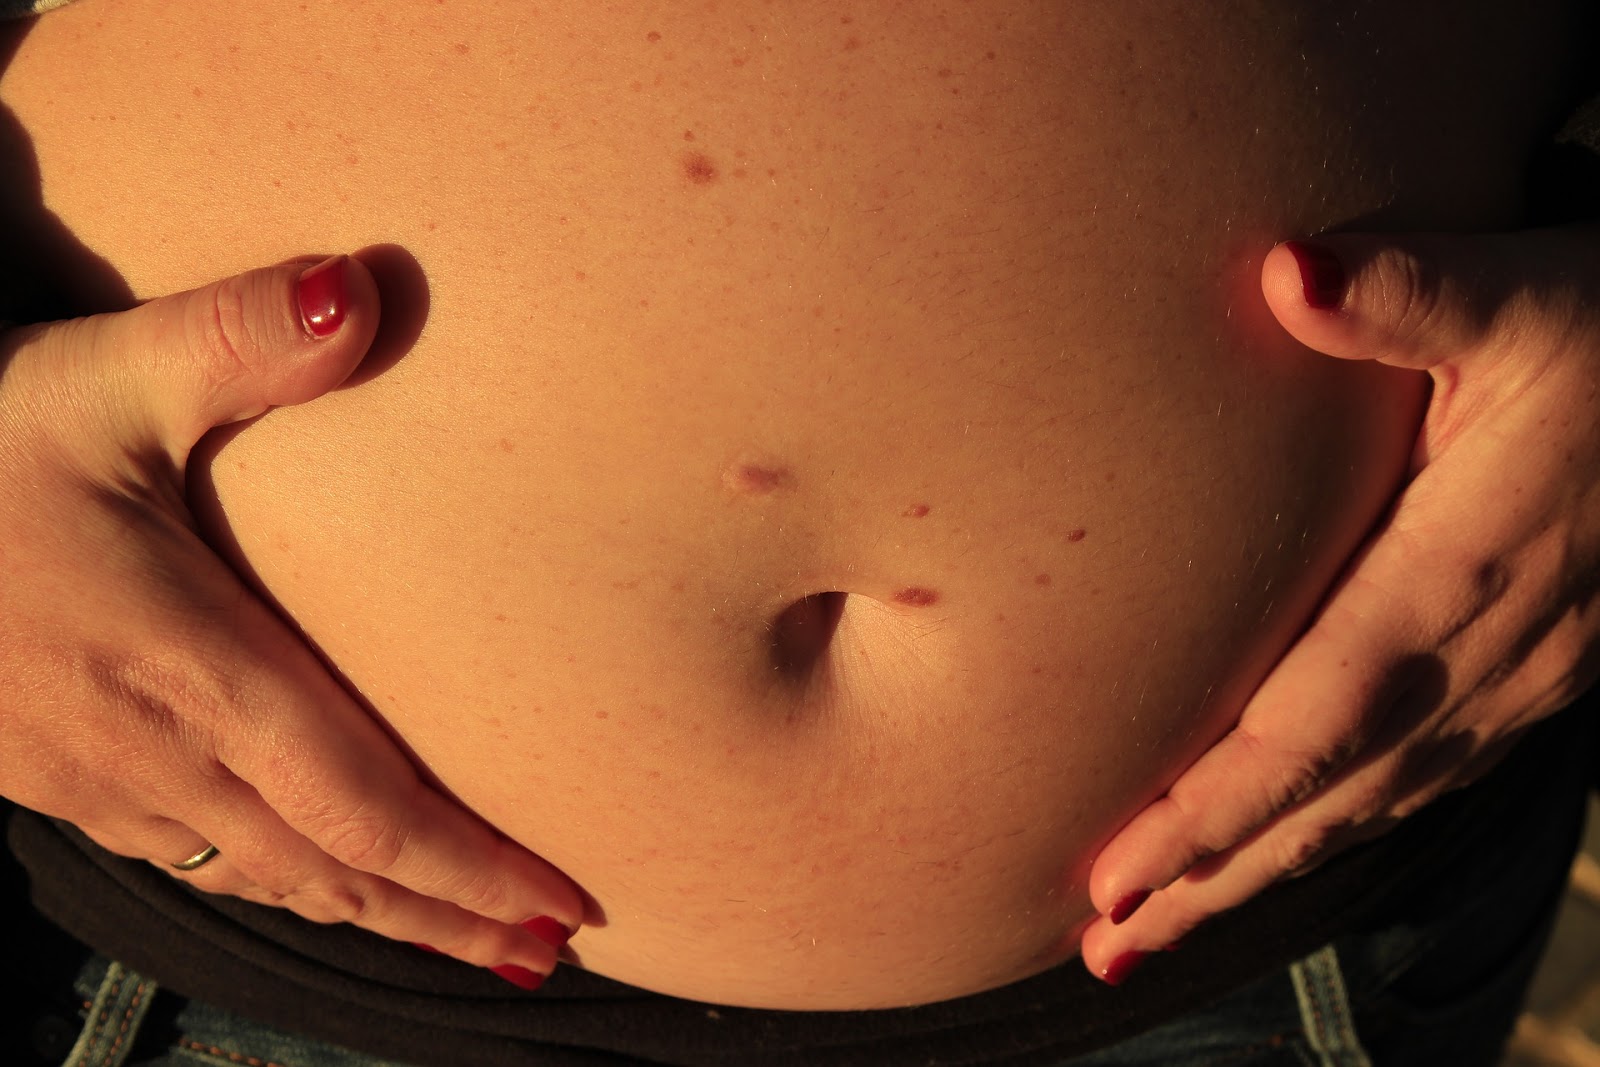 беременность 2 триместр чешется грудь фото 14